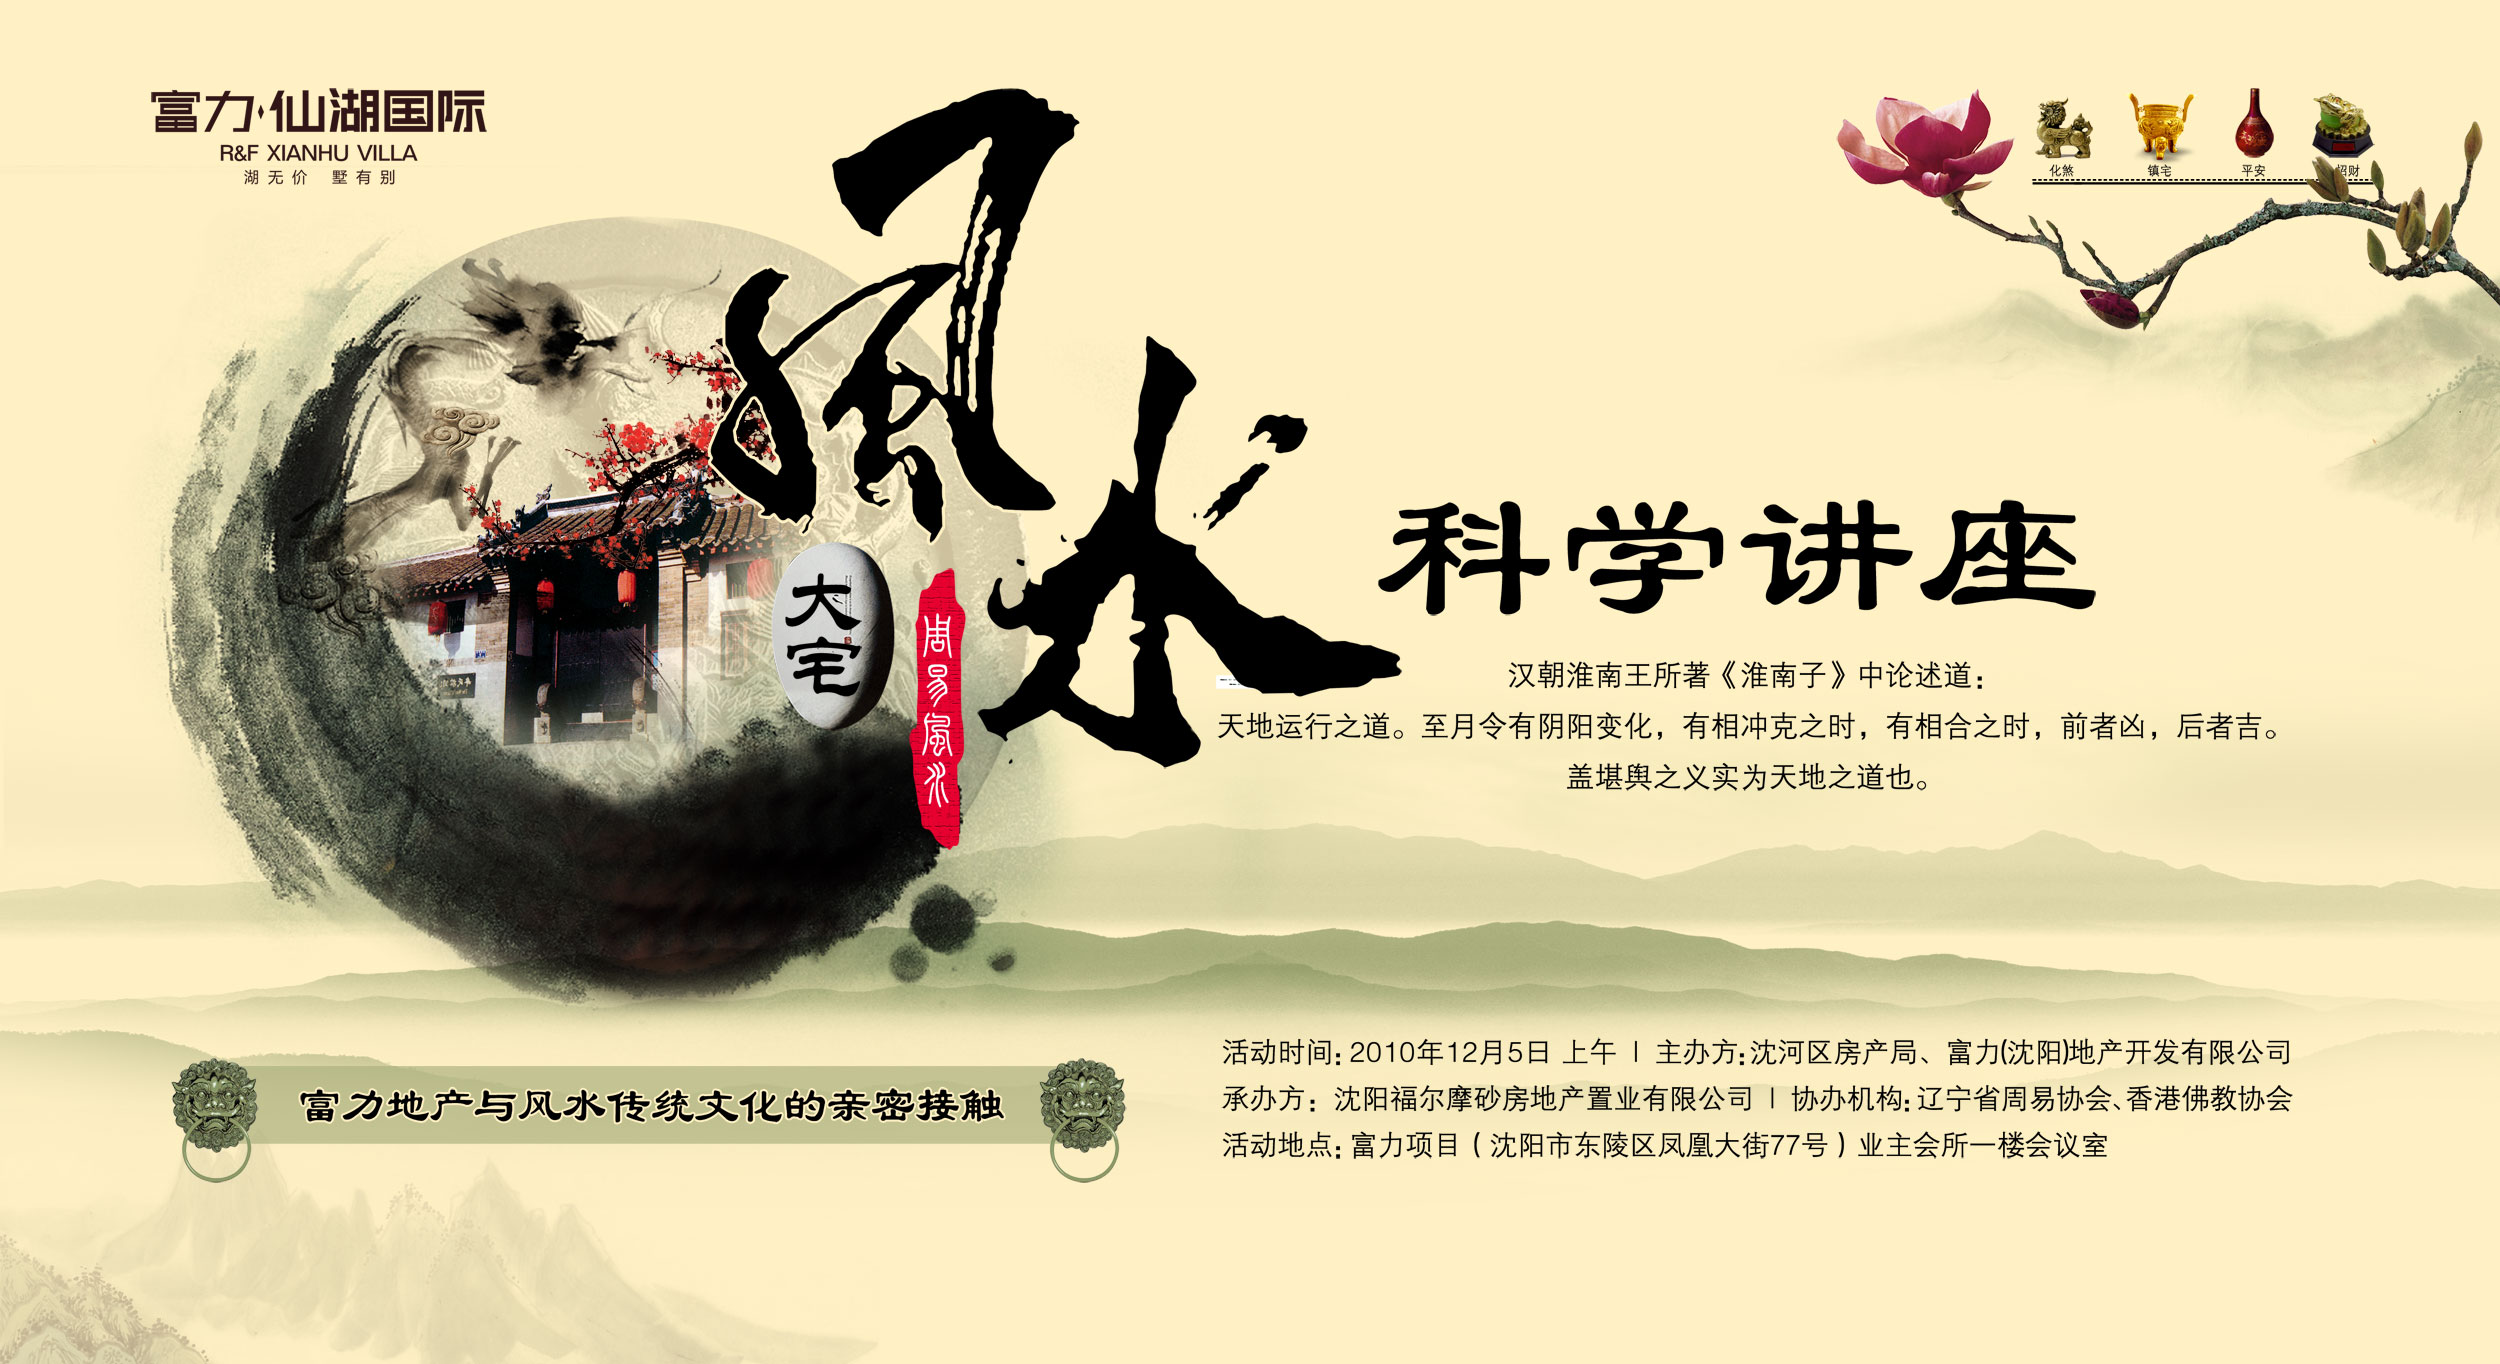 中国古典风格的房地产专题页面模板psd分层素材下载